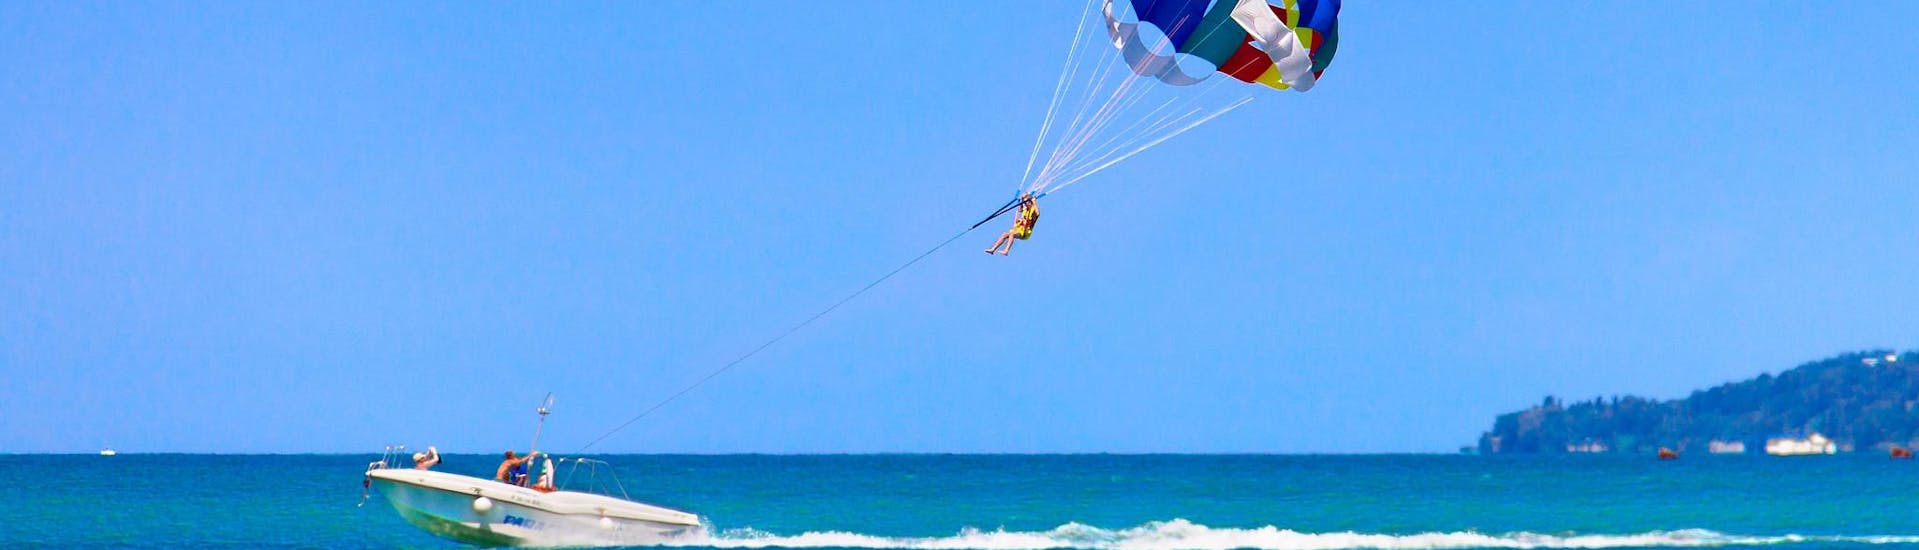 Una persona che si diverte durante un'attività di parasailing.